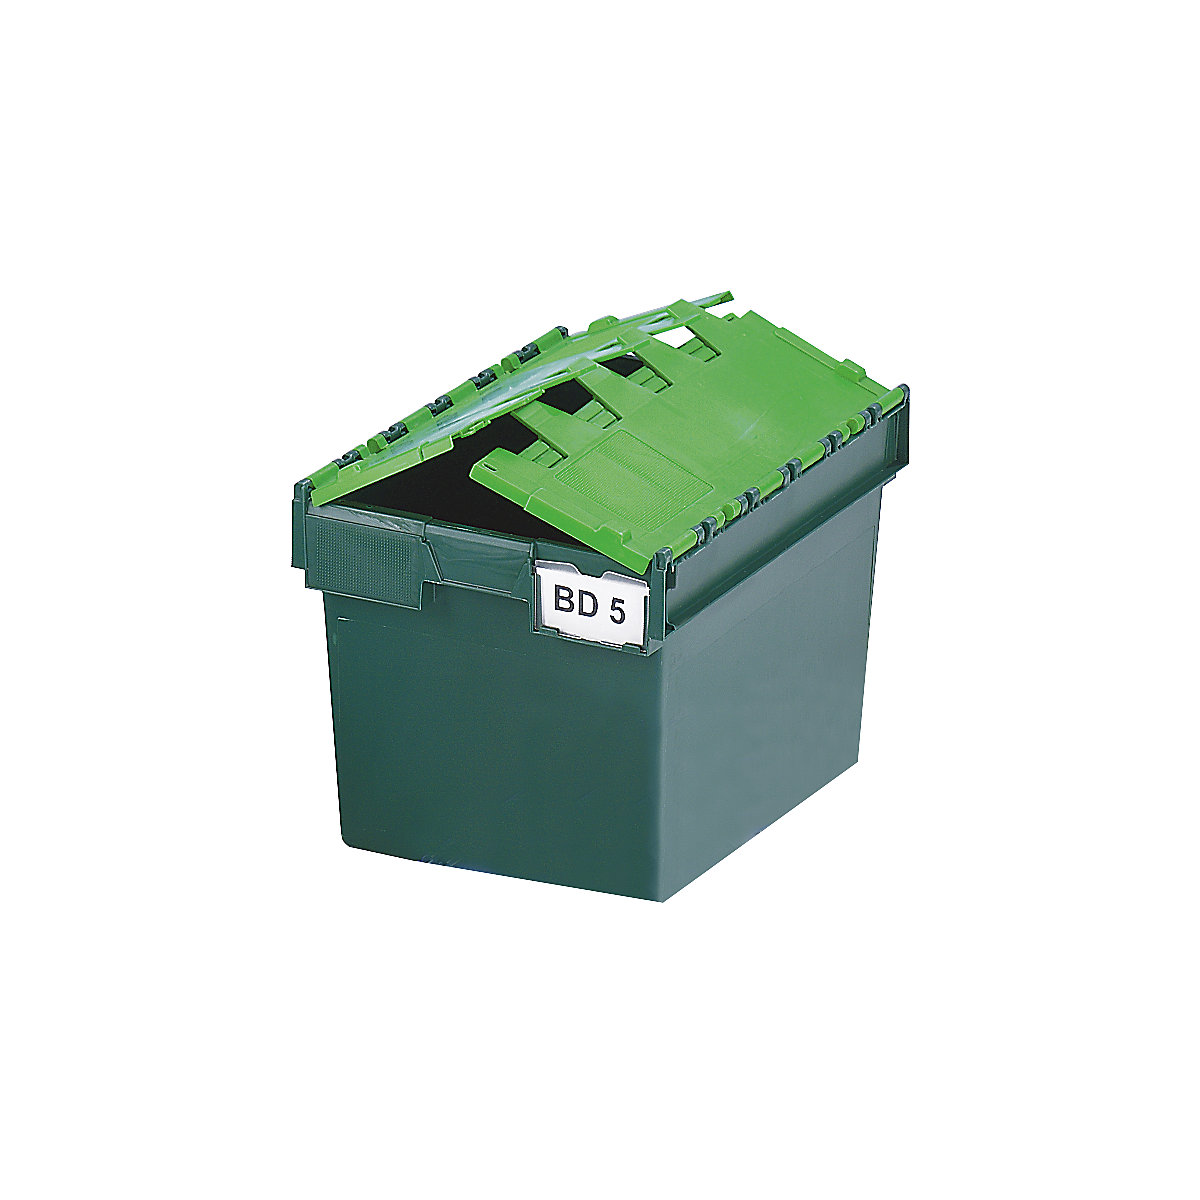 Višekratni spremnik za slaganje KAIMAN, volumen 64 l, DxŠxV 600 x 400 x 365 mm, u zelenoj boji-6